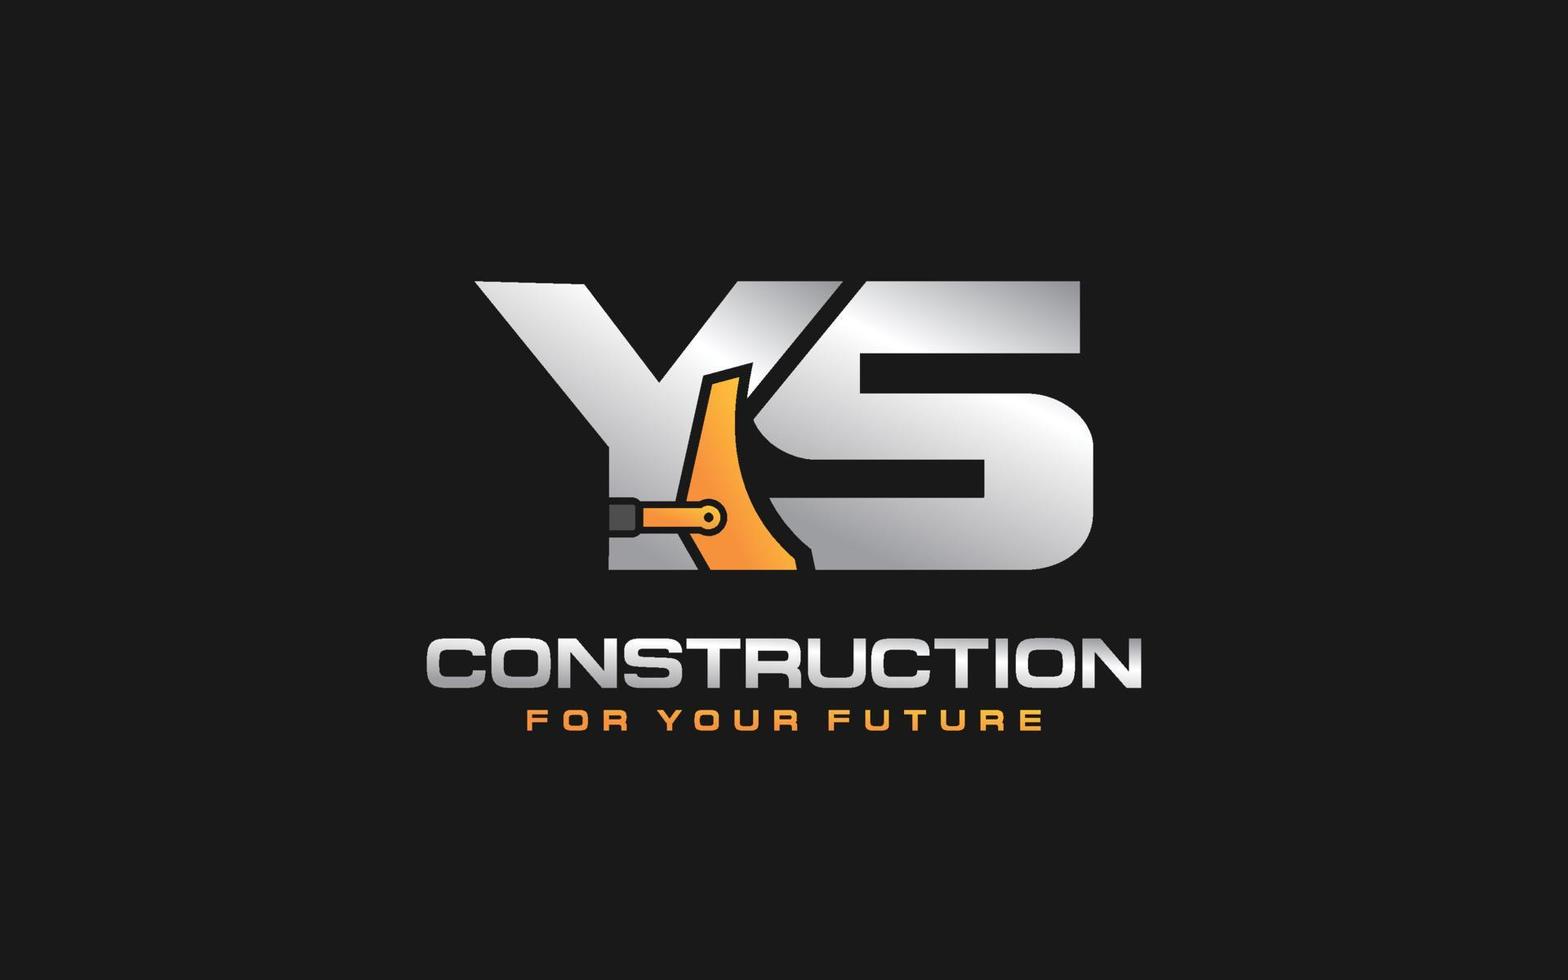 excavatrice logo ys pour entreprise de construction. illustration vectorielle de modèle d'équipement lourd pour votre marque. vecteur